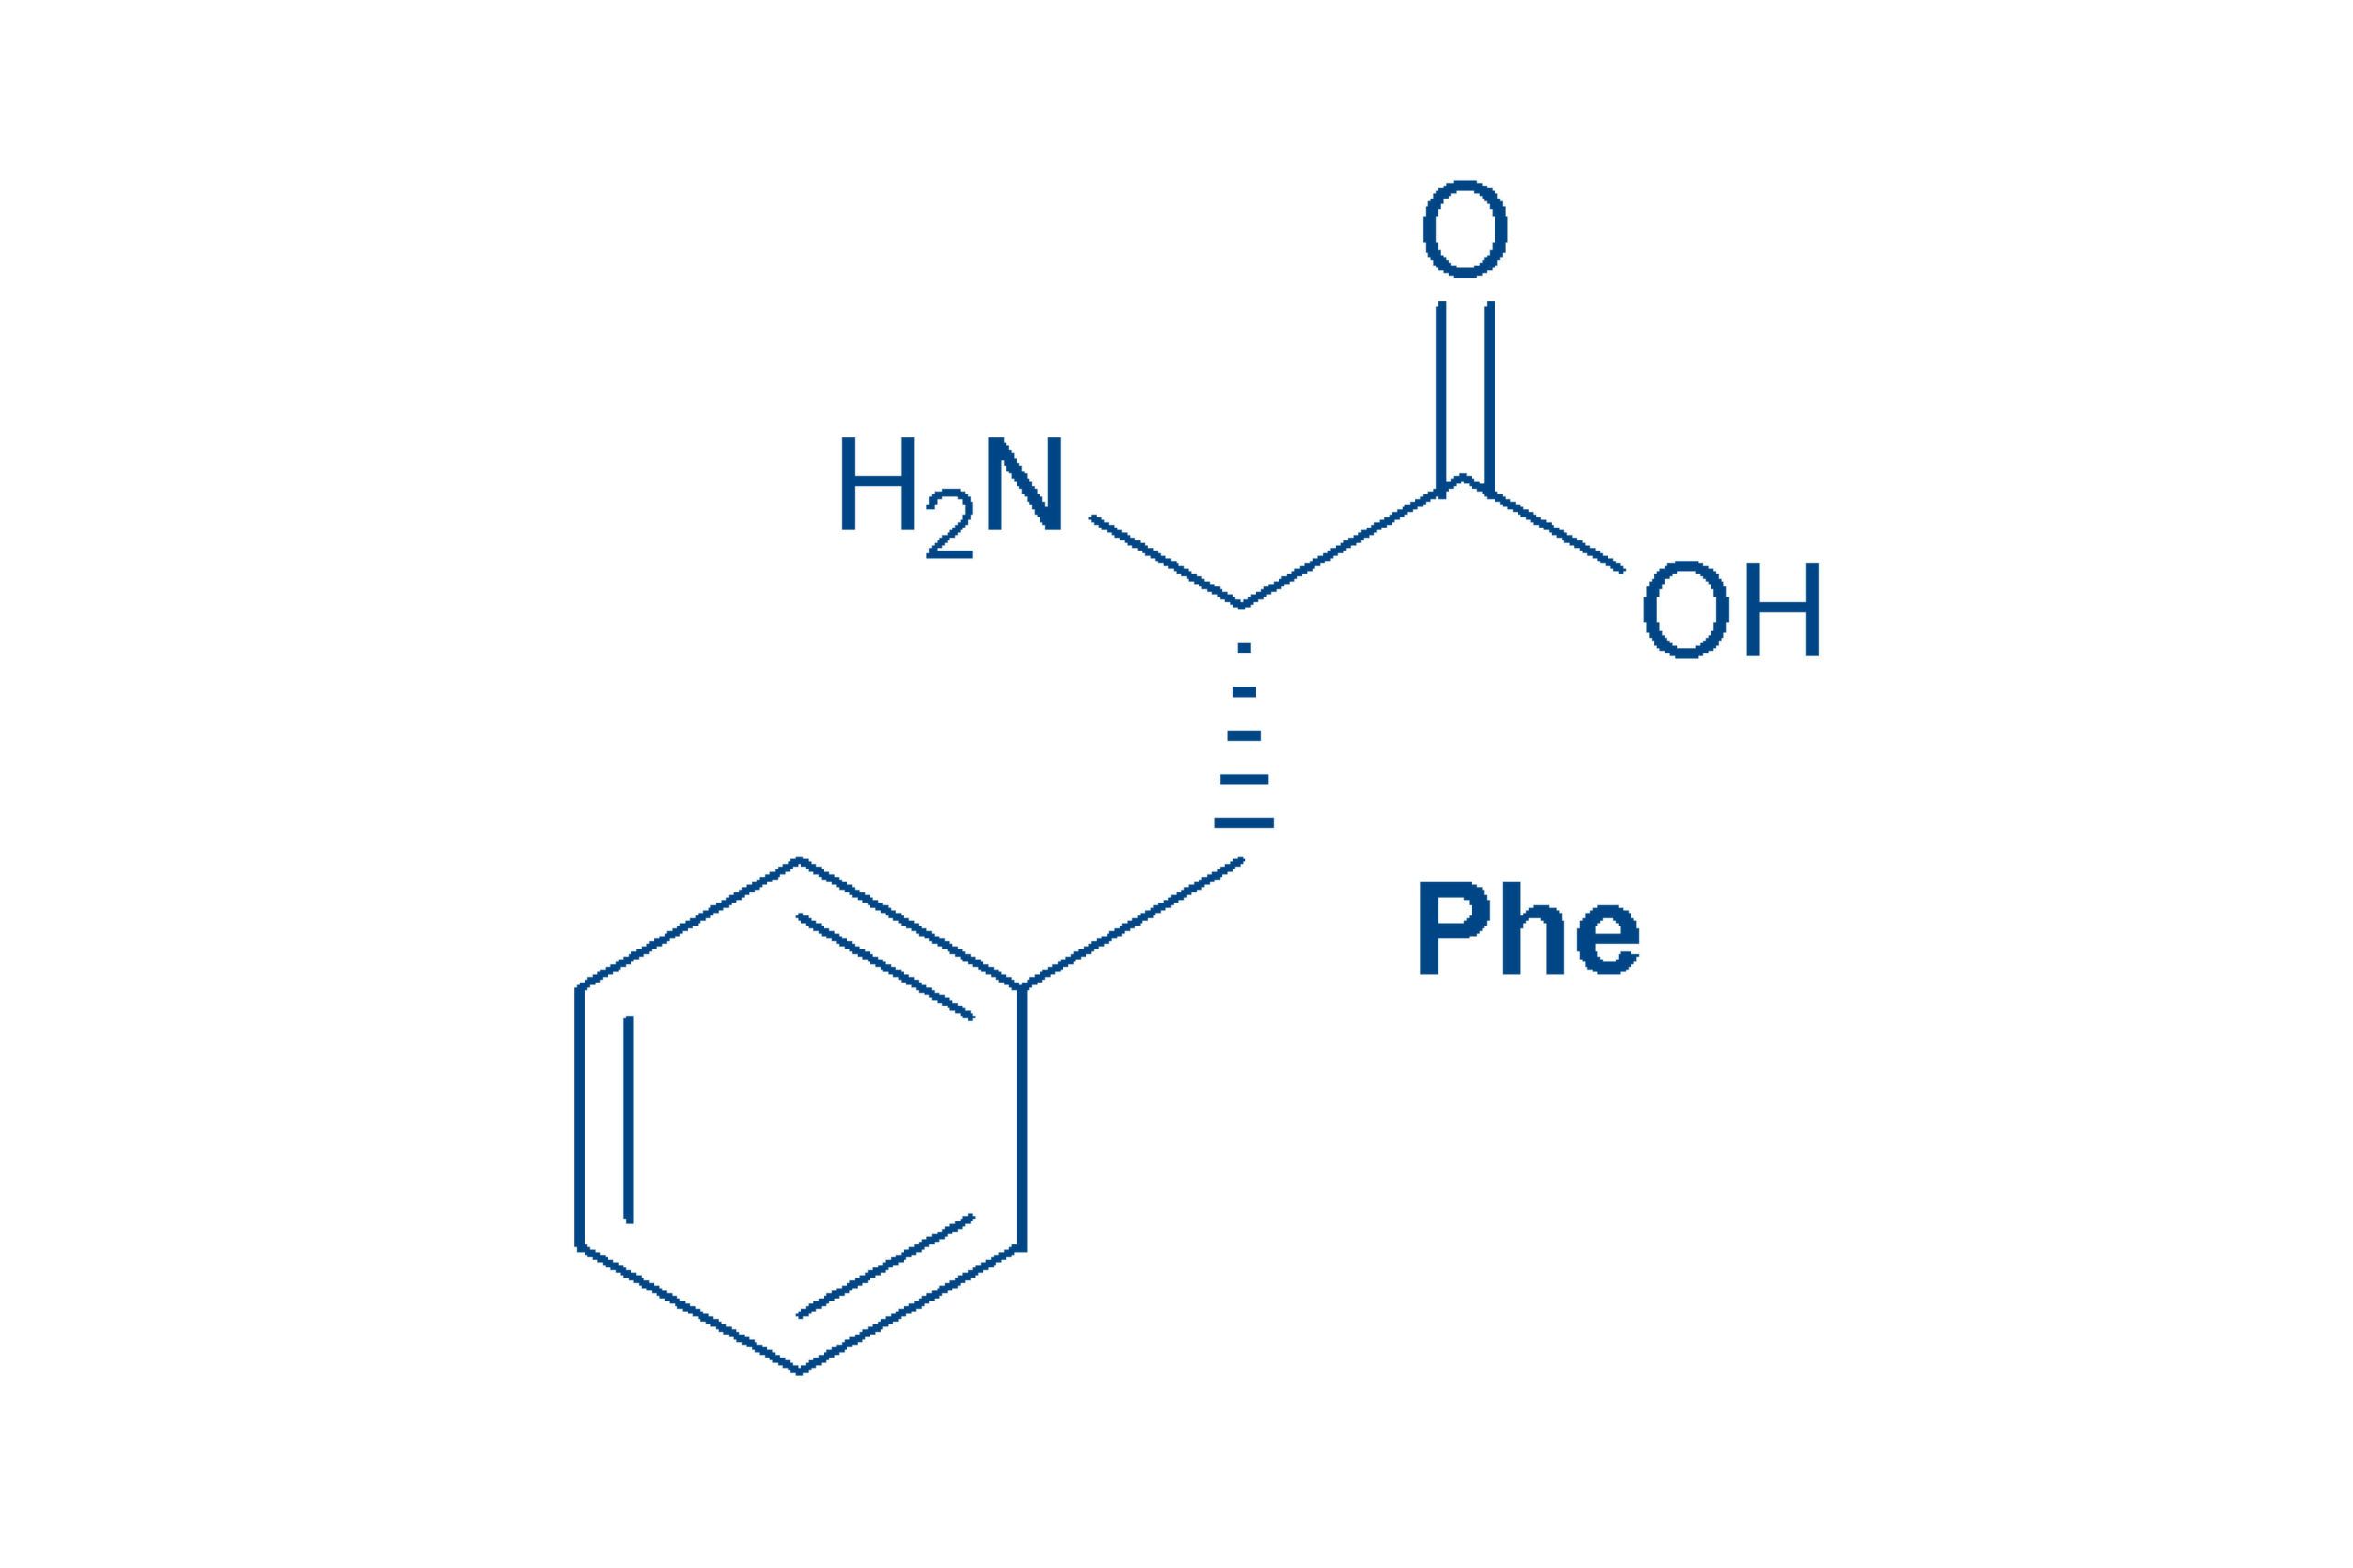 Phenylalanine structure